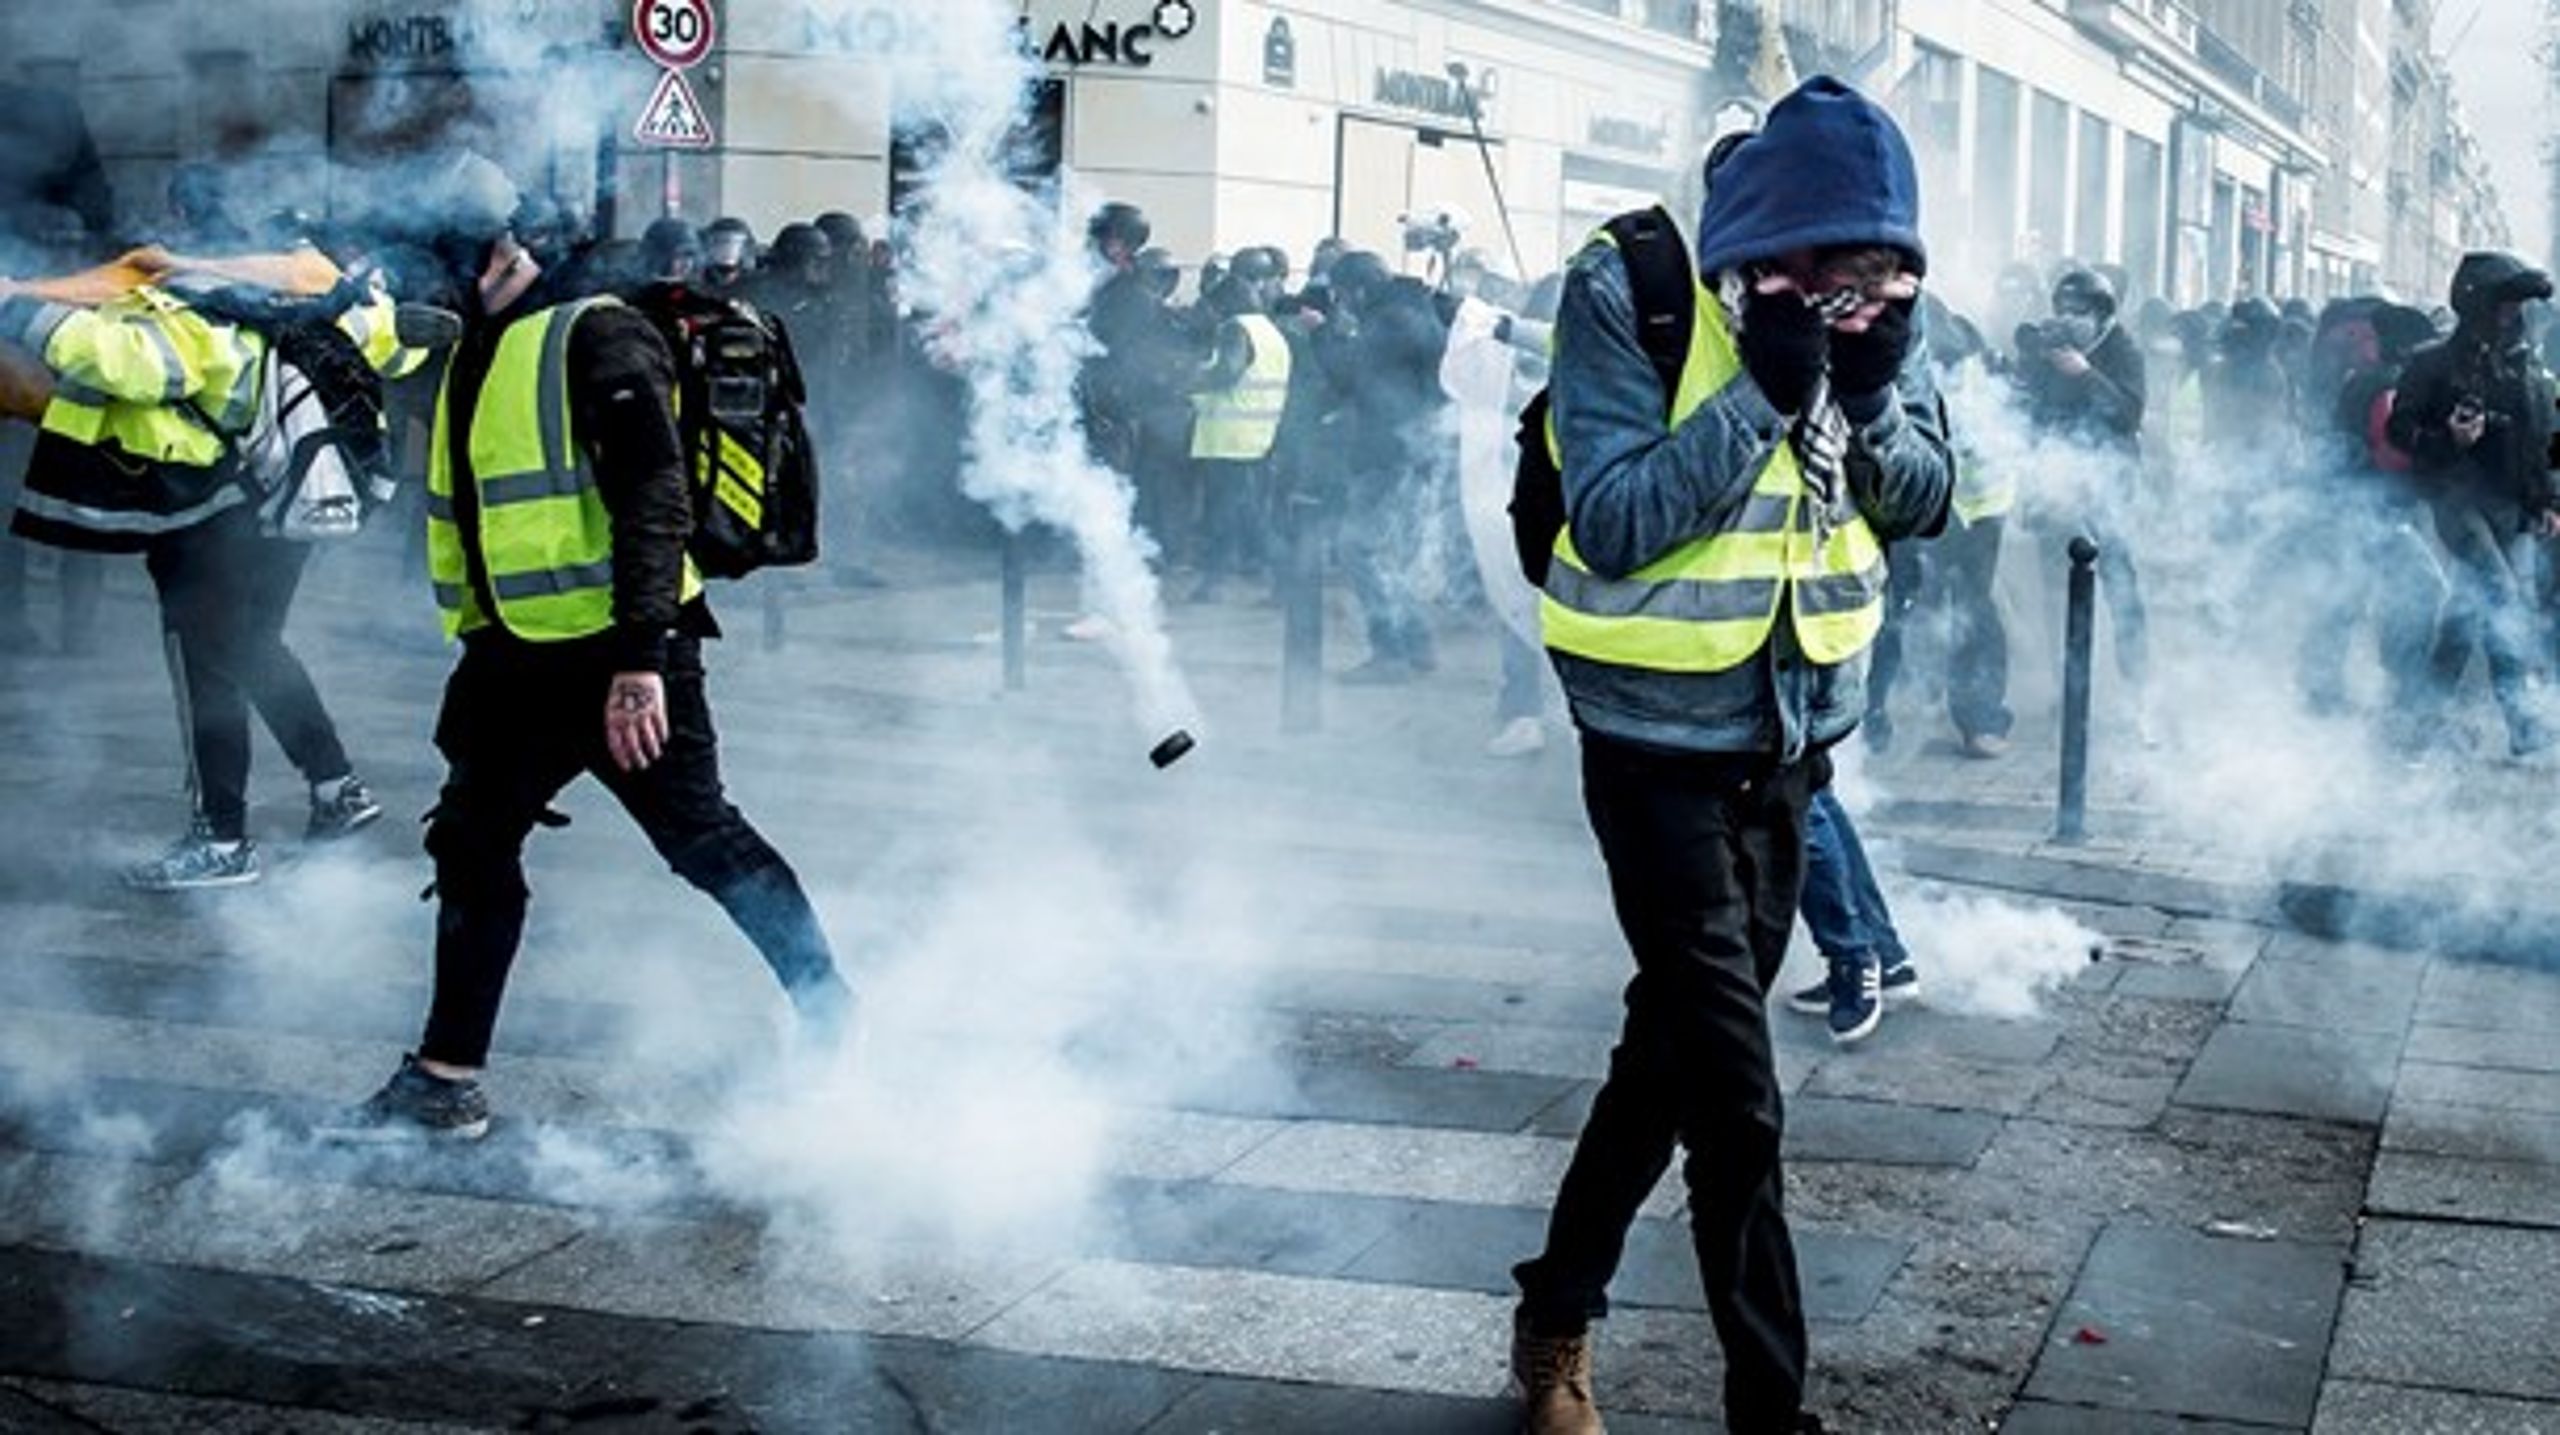 Det uhåndterlige klimasprøgsmål kan sende underprivilegerede danskere ud i ny politisk mistillid og populistisk protest, som man blandt andet har set i Frankrig med protestbevægelsen De Gule Veste, skriver Lars Olsen.